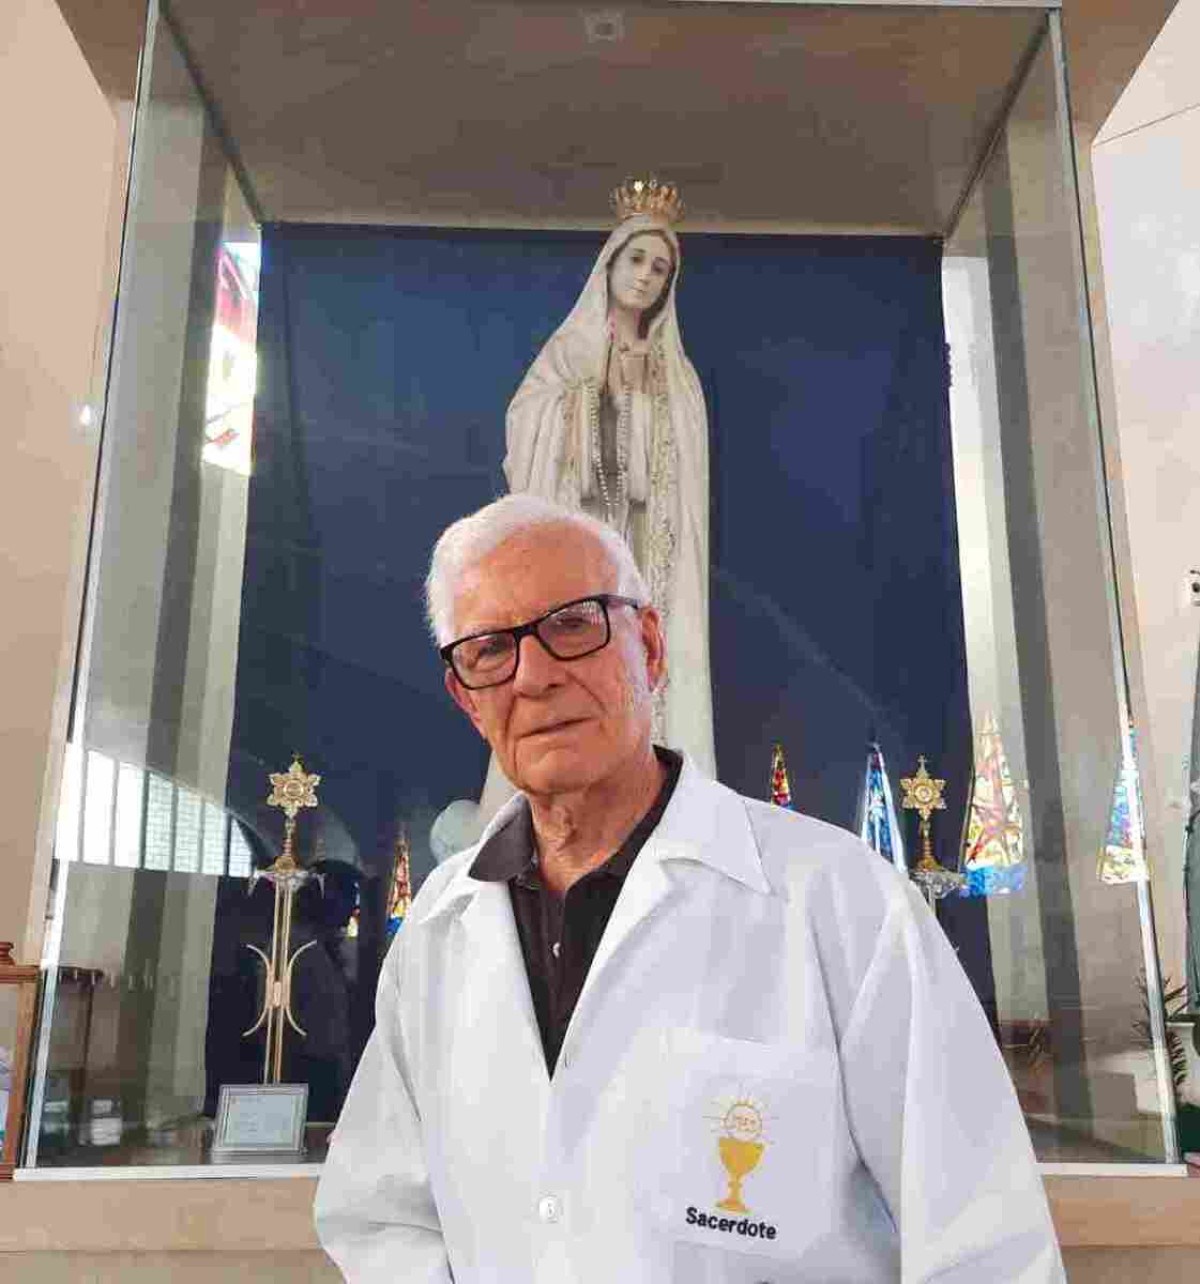 "Sempre participei e tomei parte ativa, porque a Trezena em louvor a Nossa Senhora de Fátima tem uma sentido muito especial", diz o frei Venildo Trevizan